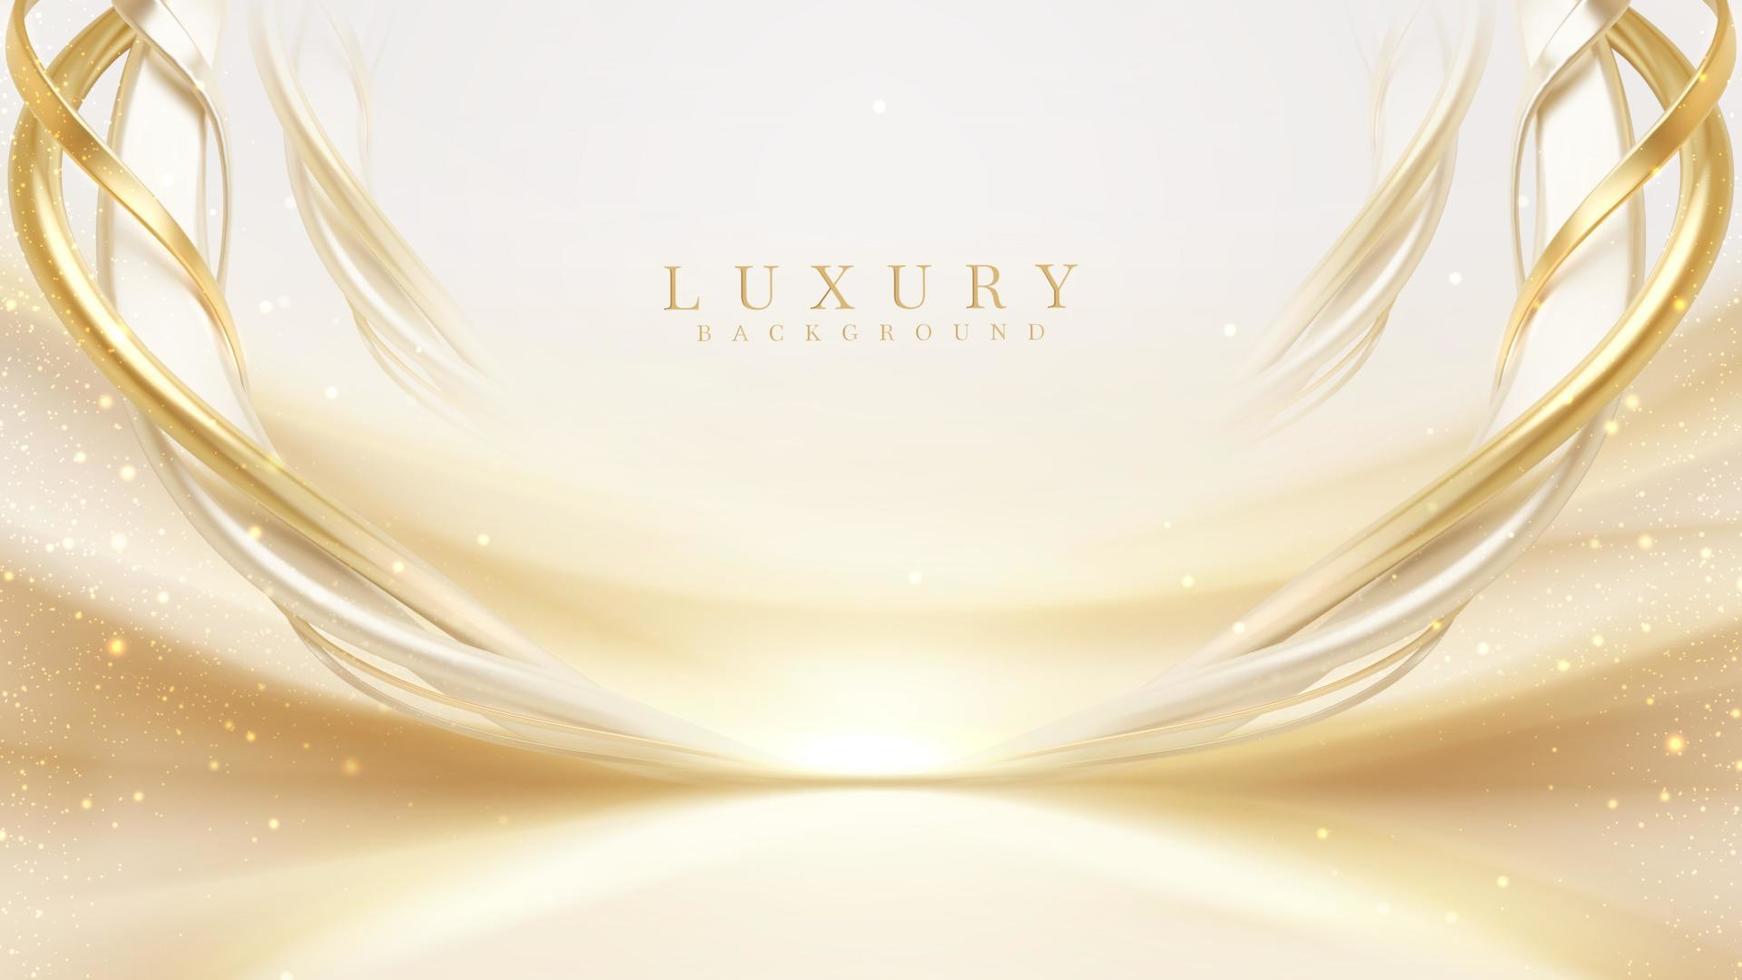 luxe room kleur achtergrond met gouden lijn elementen en kromme licht effect decoratie en bokeh. vector